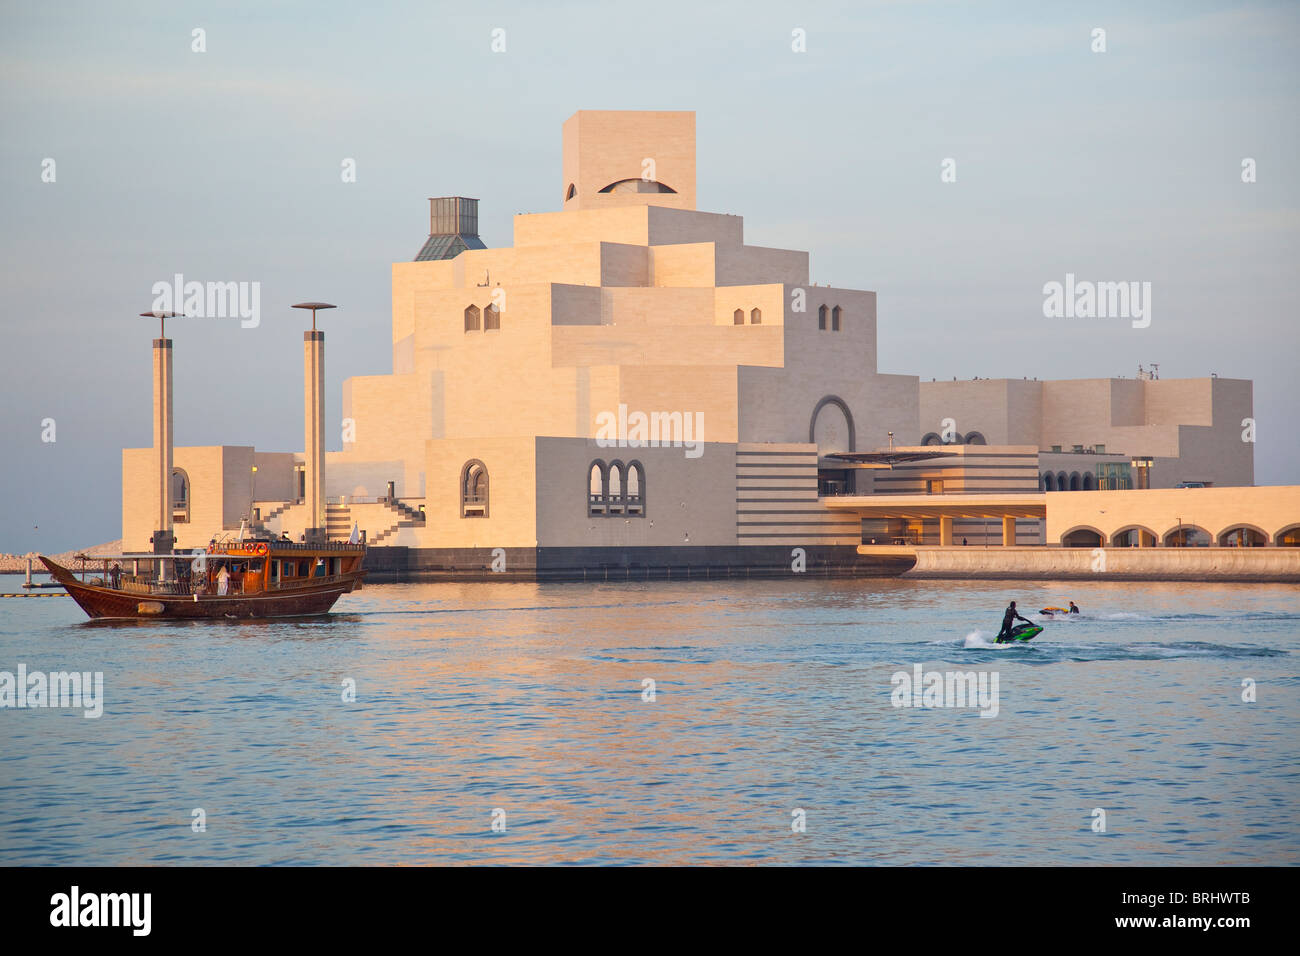 Museum of Islamic Art in Doha, Qatar Stock Photo